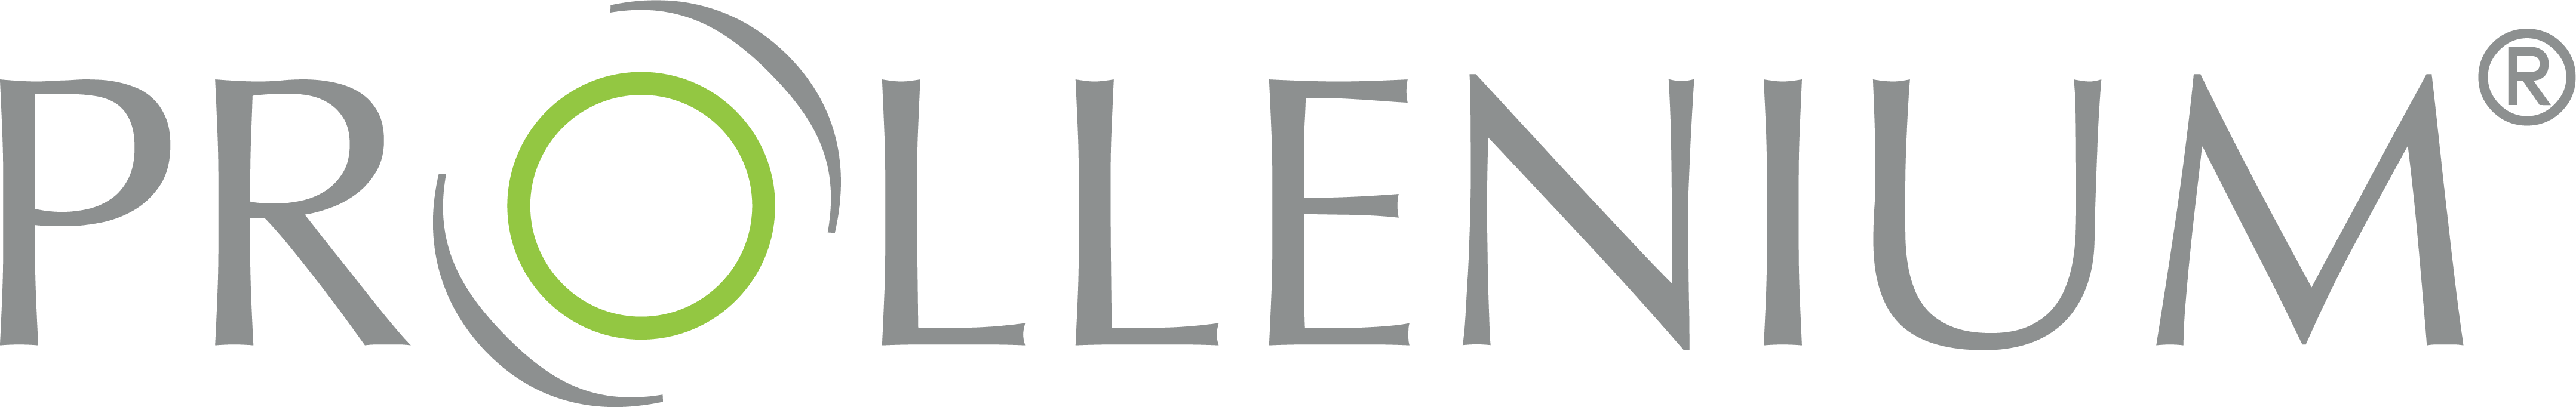 Prollenium logo